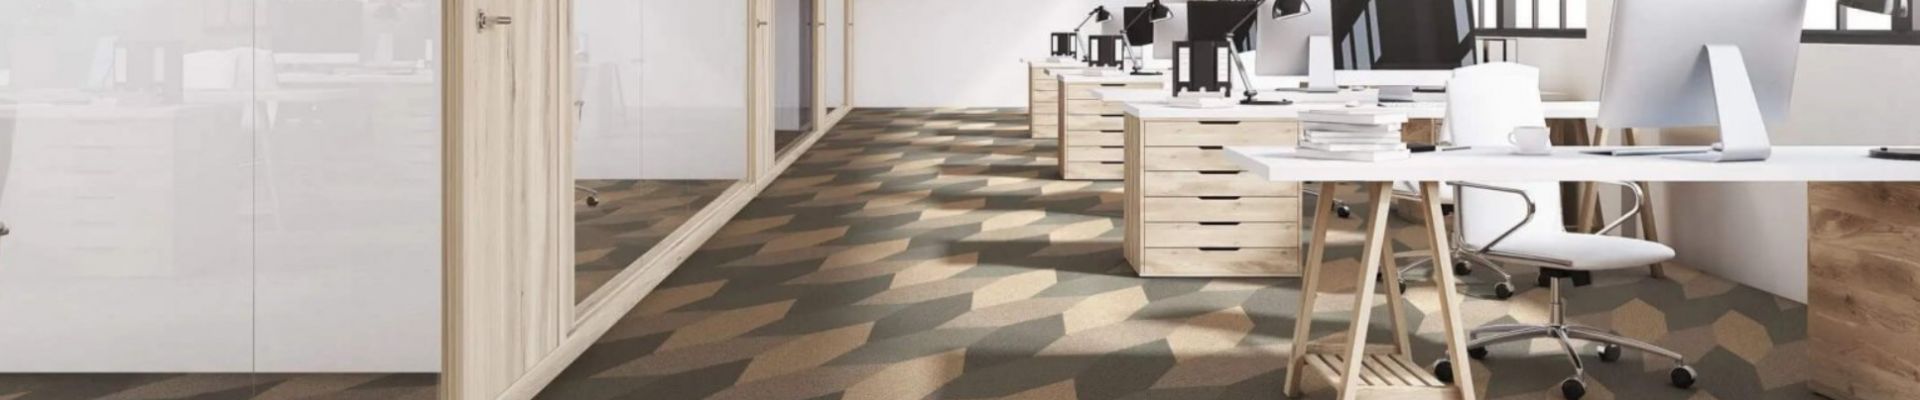 Floorinist leiab suure valiku erinevaid viimistluslahendusi põrandale ja seintele.